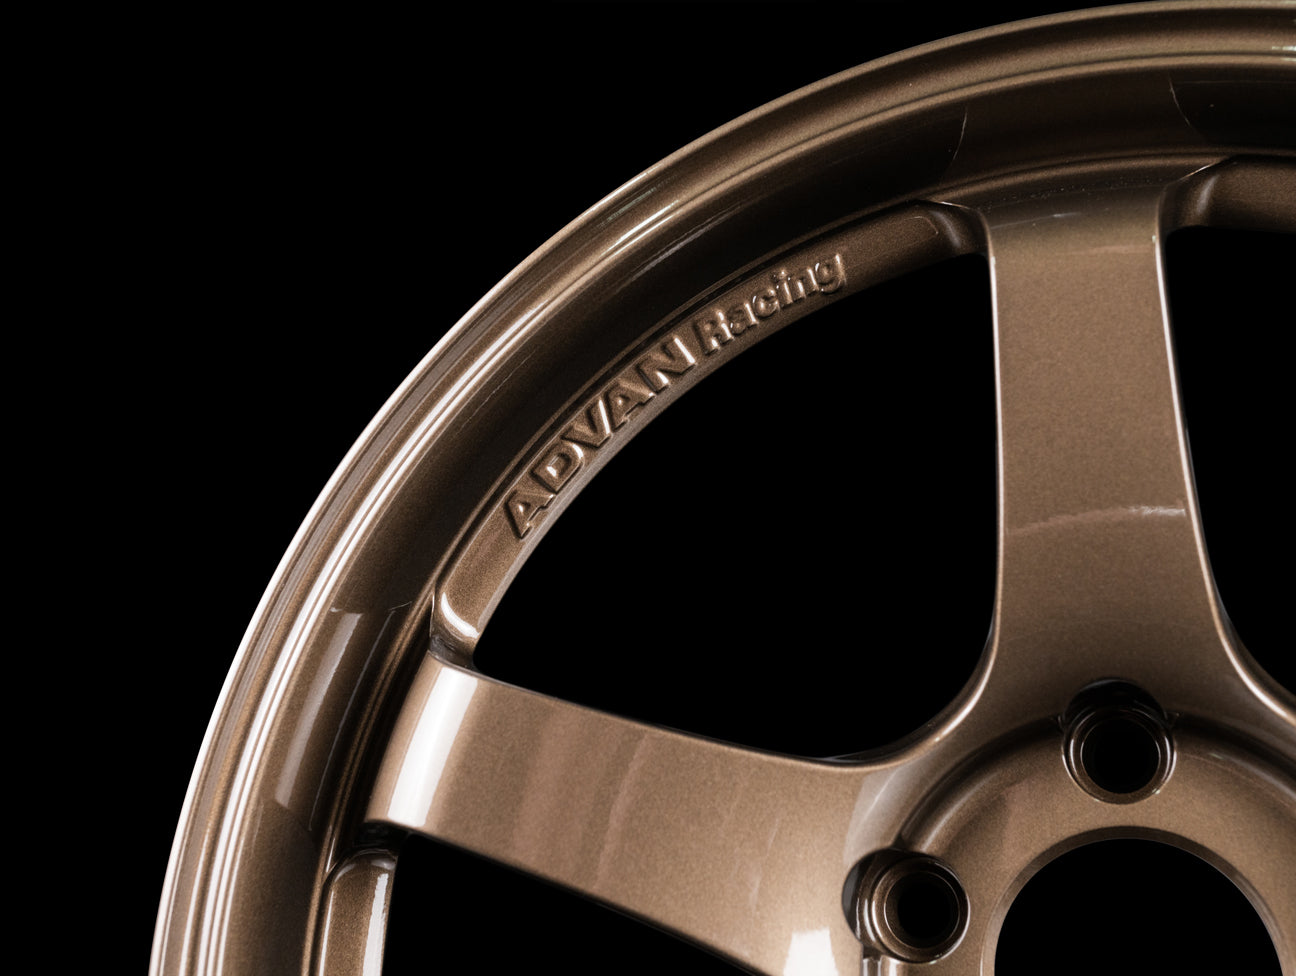 Advan Racing GT Premium Wheels - Umber Bronze - 18x9.5 / 5x120 / +38